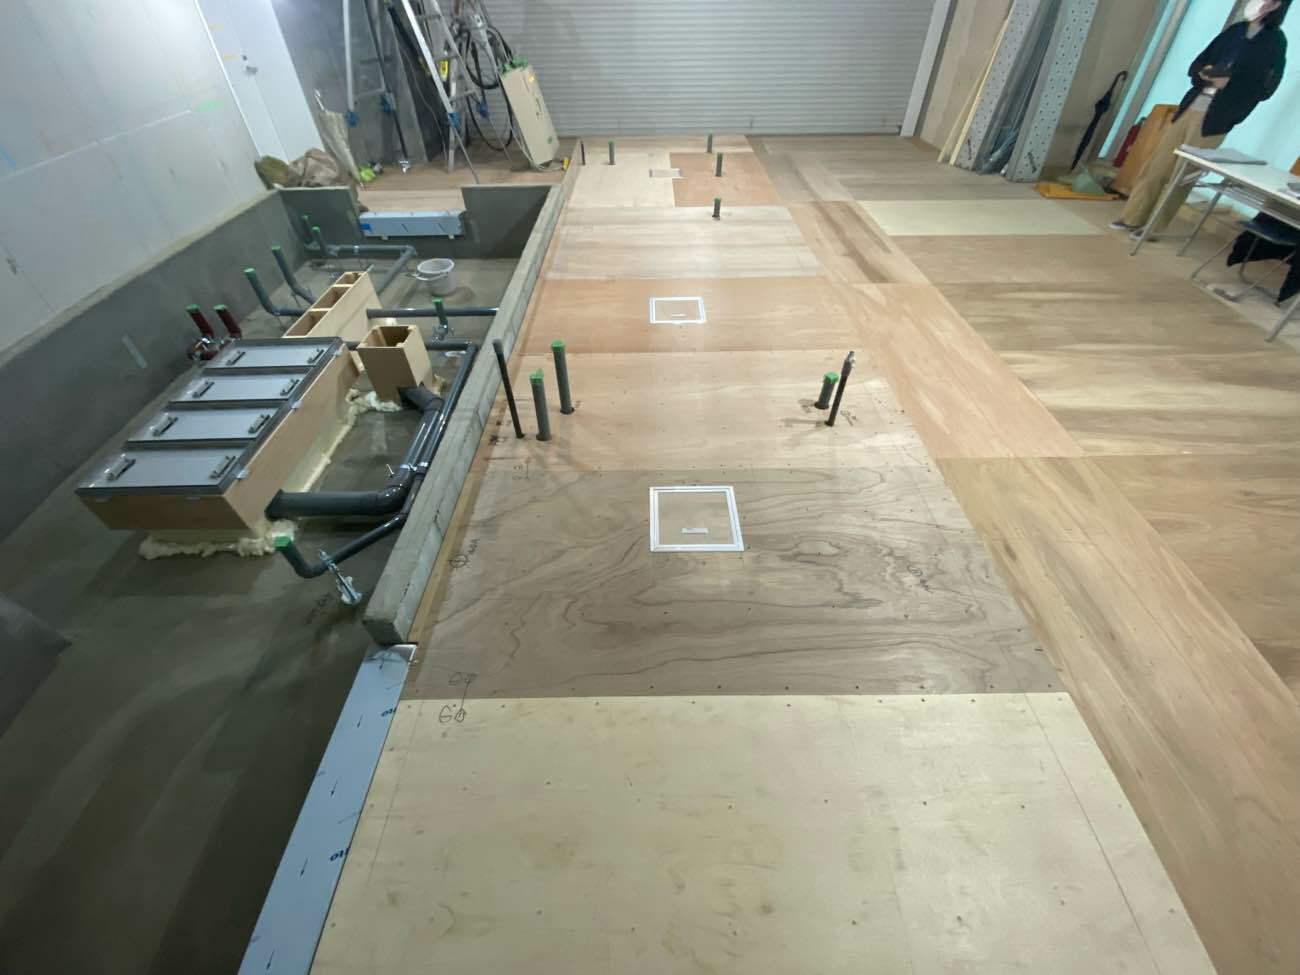 東京都港区にて店舗の置床工事を行いました。乾式二重床